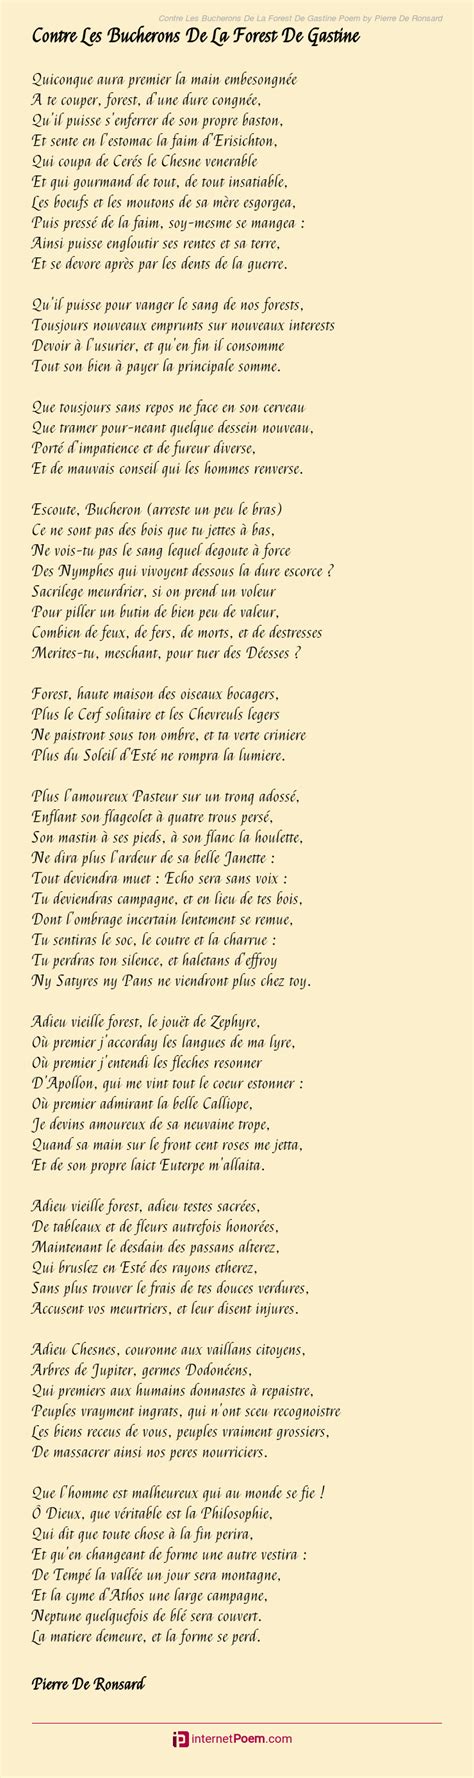 Contre Les Bucherons De La Forest De Gastine Poem By Pierre De Ronsard